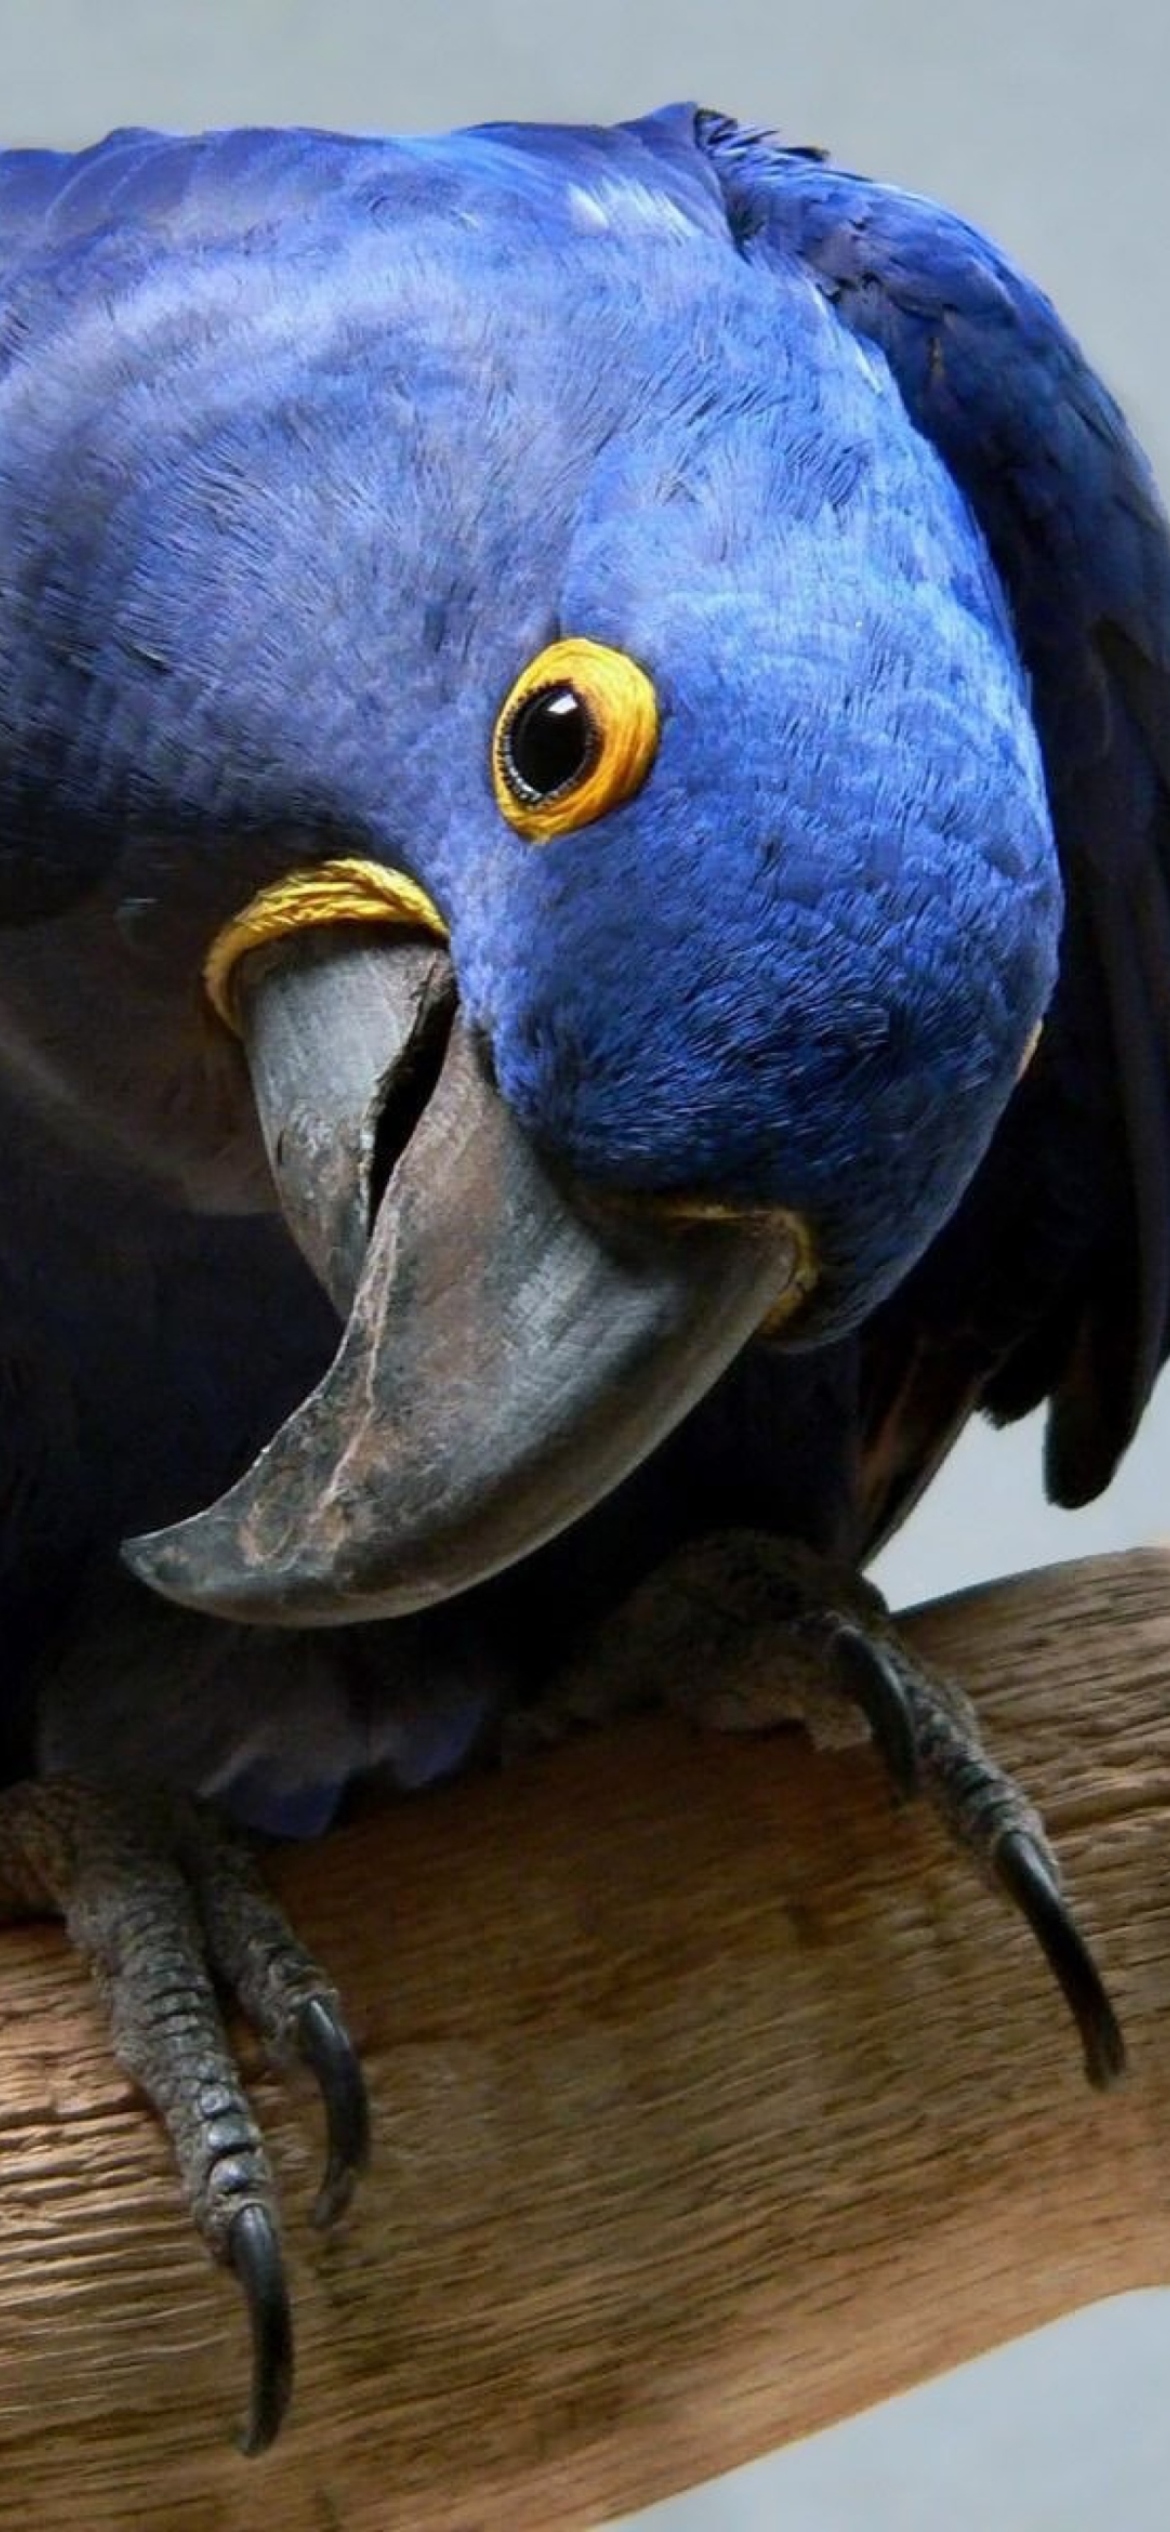 Cute Blue Parrot wallpaper 1170x2532